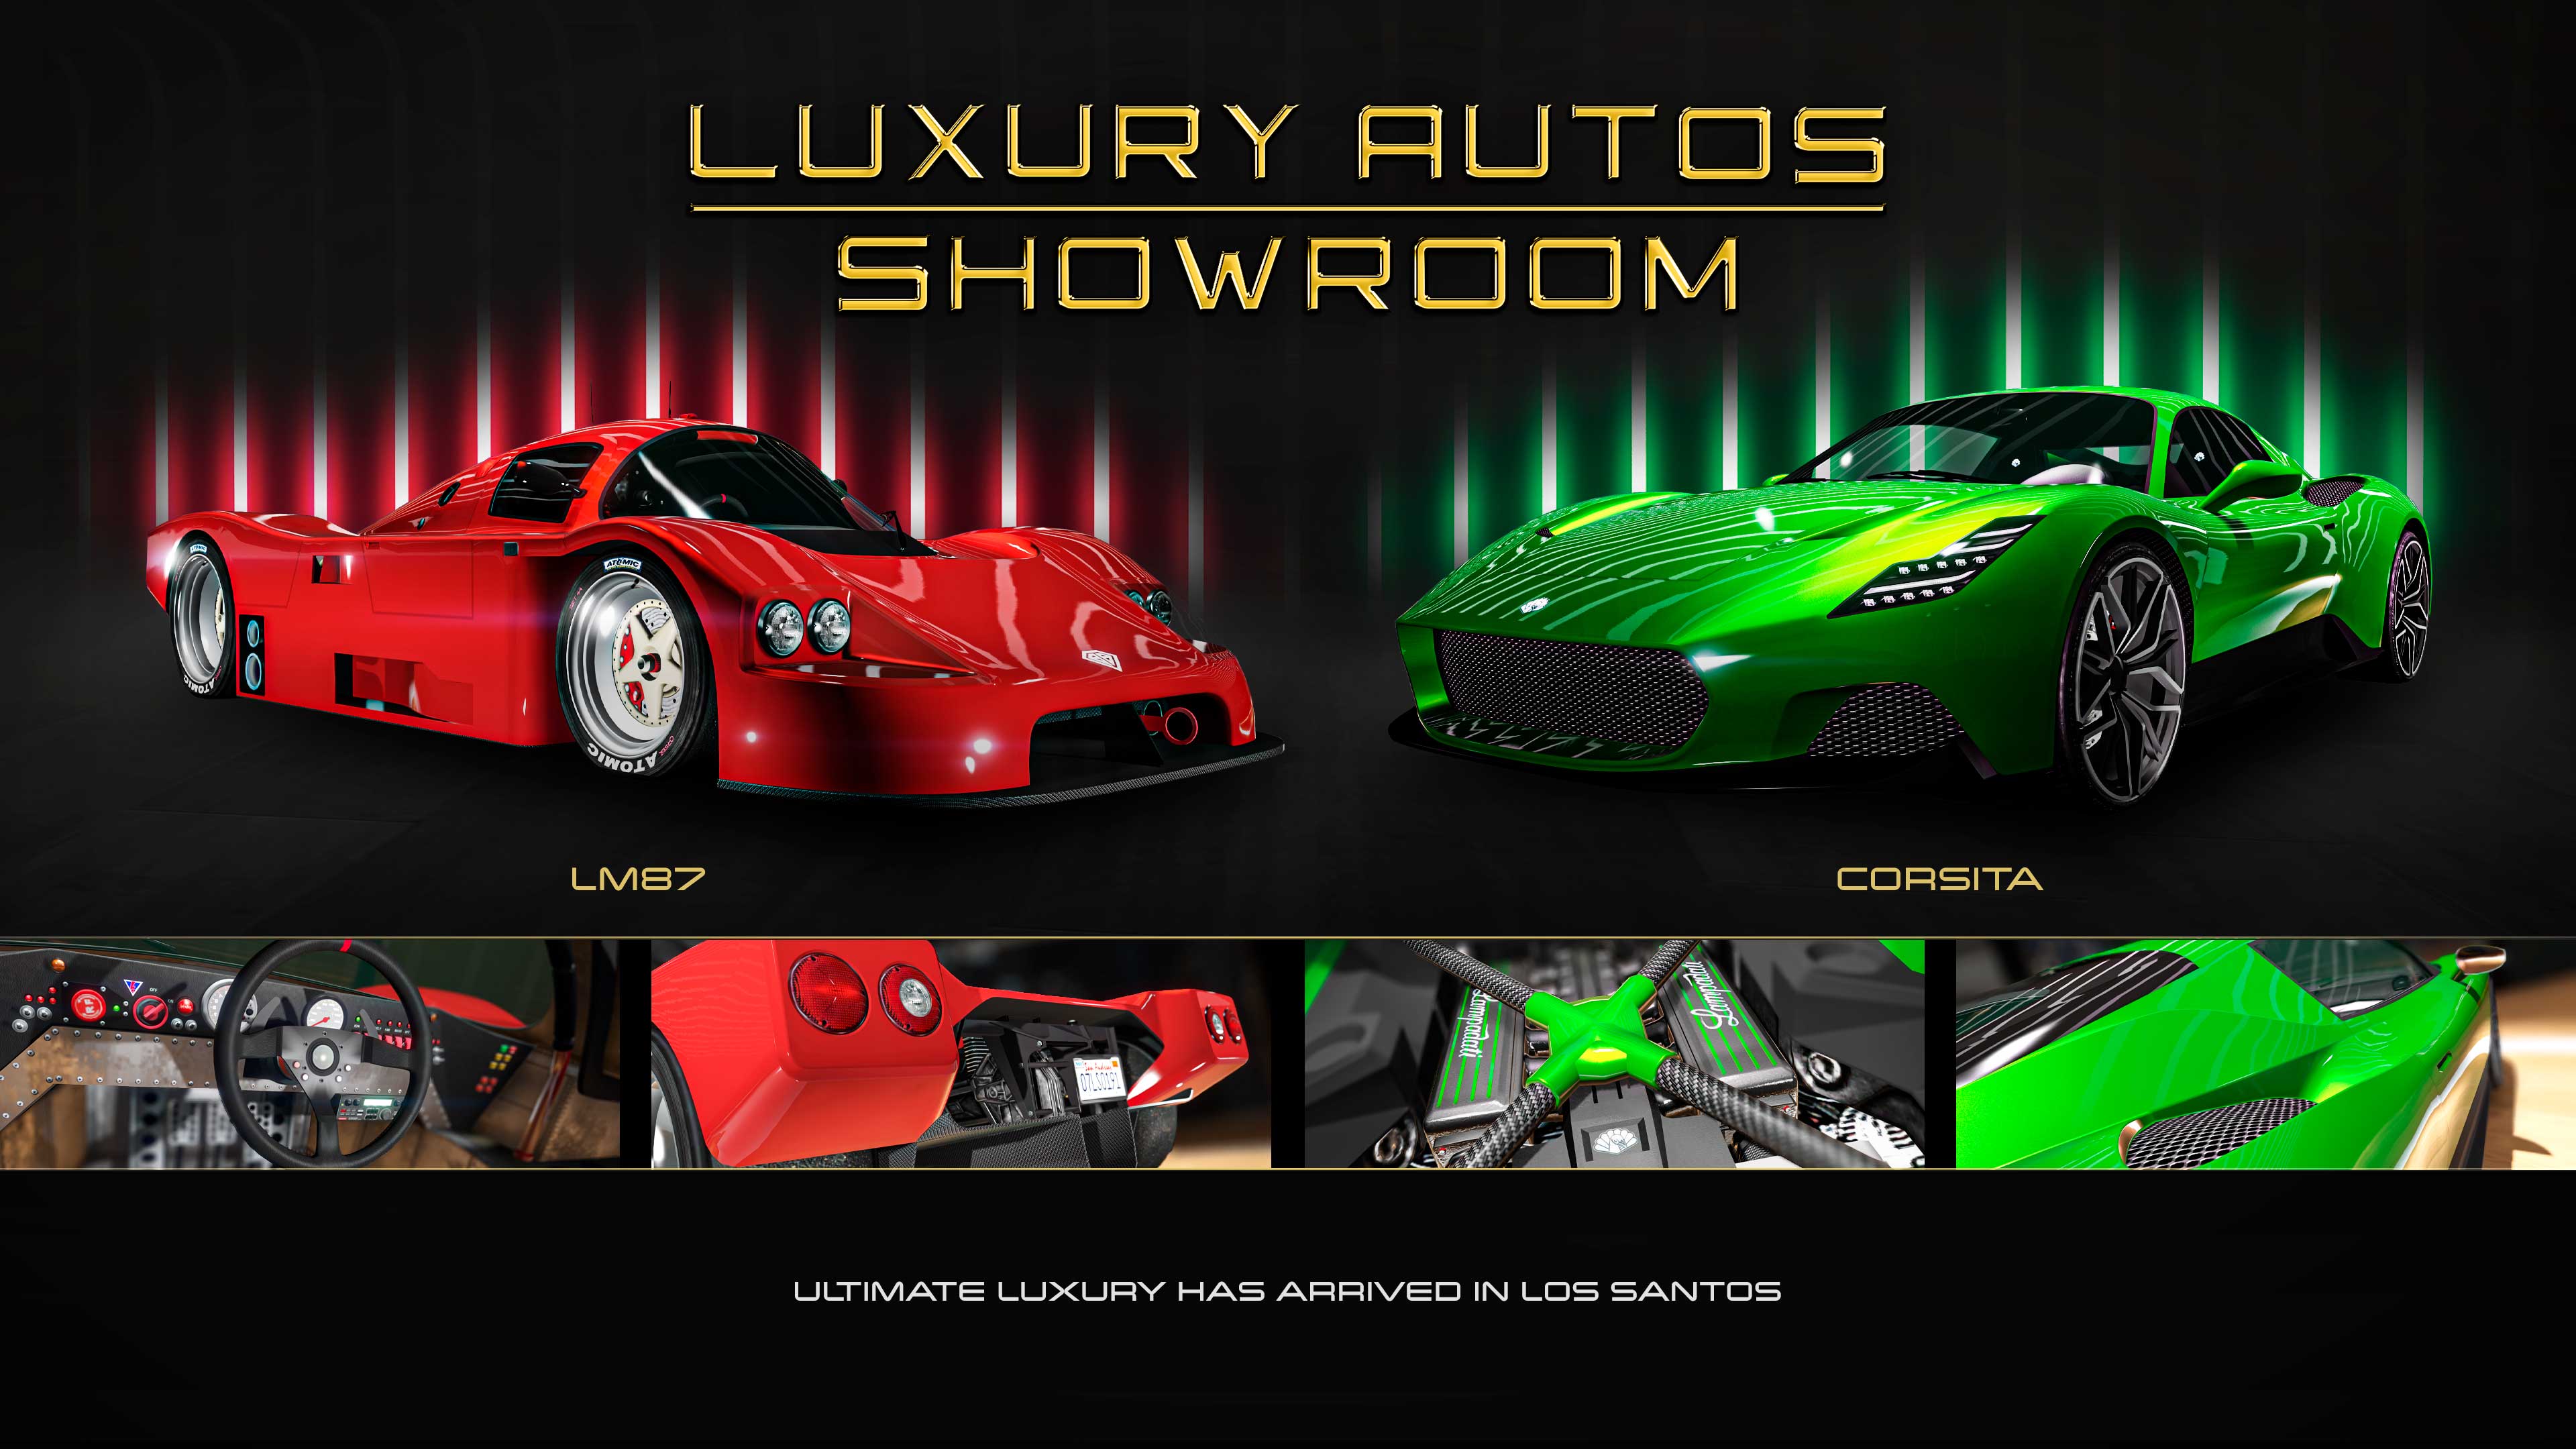 Poster dell'autosalone Luxury Autos con veicoli